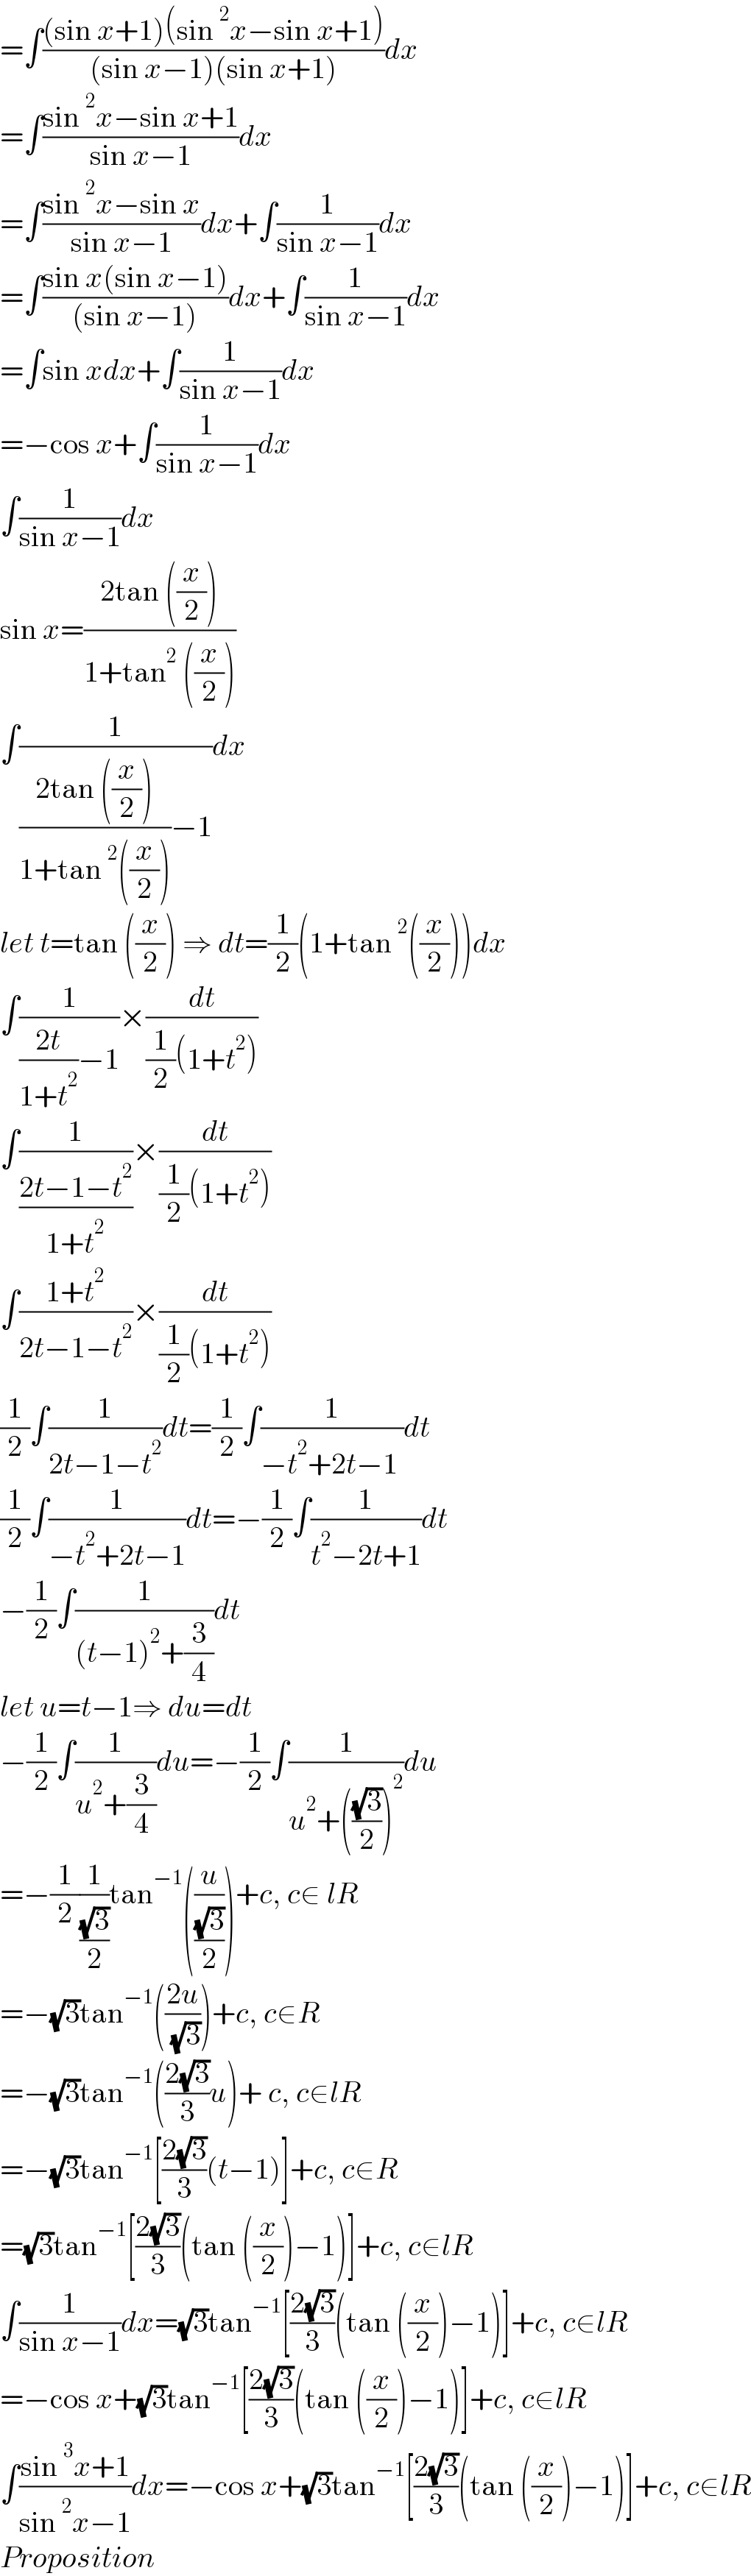 =∫(((sin x+1)(sin^2 x−sin x+1))/((sin x−1)(sin x+1)))dx  =∫((sin^2 x−sin x+1)/(sin x−1))dx  =∫((sin^2 x−sin x)/(sin x−1))dx+∫(1/(sin x−1))dx  =∫((sin x(sin x−1))/((sin x−1)))dx+∫(1/(sin x−1))dx  =∫sin xdx+∫(1/(sin x−1))dx  =−cos x+∫(1/(sin x−1))dx  ∫(1/(sin x−1))dx  sin x=((2tan ((x/2)))/(1+tan^2  ((x/2))))  ∫(1/(((2tan ((x/2)))/(1+tan^2 ((x/2))))−1))dx  let t=tan ((x/2)) ⇒ dt=(1/2)(1+tan^2 ((x/2)))dx  ∫(1/(((2t)/(1+t^2 ))−1))×(dt/((1/2)(1+t^2 )))  ∫(1/((2t−1−t^2 )/(1+t^2 )))×(dt/((1/2)(1+t^2 )))  ∫((1+t^2 )/(2t−1−t^2 ))×(dt/((1/2)(1+t^2 )))  (1/2)∫(1/(2t−1−t^2 ))dt=(1/2)∫(1/(−t^2 +2t−1 ))dt  (1/2)∫(1/(−t^2 +2t−1))dt=−(1/2)∫(1/(t^2 −2t+1))dt  −(1/2)∫(1/((t−1)^2 +(3/4)))dt  let u=t−1⇒ du=dt  −(1/2)∫(1/(u^2 +(3/4)))du=−(1/2)∫(1/(u^2 +(((√3)/2))^2 ))du  =−(1/2)(1/((√3)/2))tan^(−1) ((u/((√3)/2)))+c, c∈ lR  =−(√3)tan^(−1) (((2u)/( (√3))))+c, c∈R  =−(√3)tan^(−1) (((2(√3))/3)u)+ c, c∈lR  =−(√3)tan^(−1) [((2(√3))/3)(t−1)]+c, c∈R  =(√3)tan^(−1) [((2(√3))/3)(tan ((x/2))−1)]+c, c∈lR  ∫(1/(sin x−1))dx=(√3)tan^(−1) [((2(√3))/3)(tan ((x/2))−1)]+c, c∈lR  =−cos x+(√3)tan^(−1) [((2(√3))/3)(tan ((x/2))−1)]+c, c∈lR  ∫((sin^3 x+1)/(sin^2 x−1))dx=−cos x+(√3)tan^(−1) [((2(√3))/3)(tan ((x/2))−1)]+c, c∈lR  Proposition  